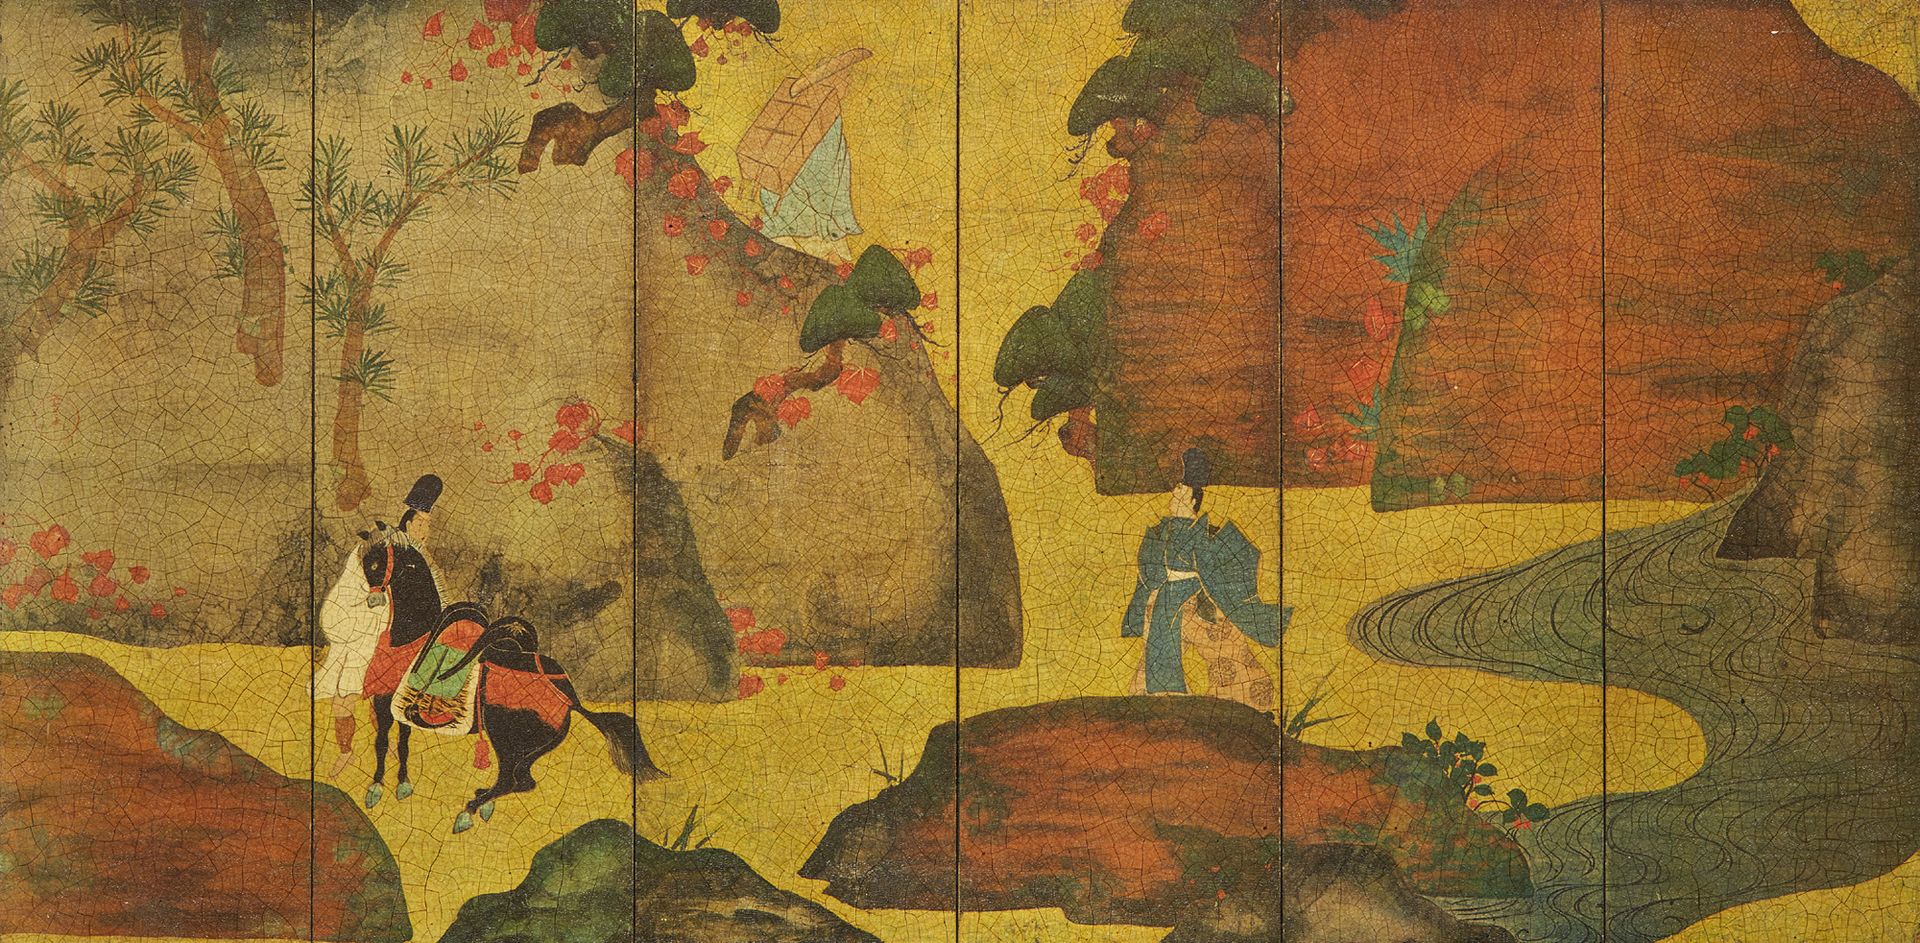 JAPON Panel decorativo a modo de biombo que muestra dos figuras en un paisaje.
P&hellip;